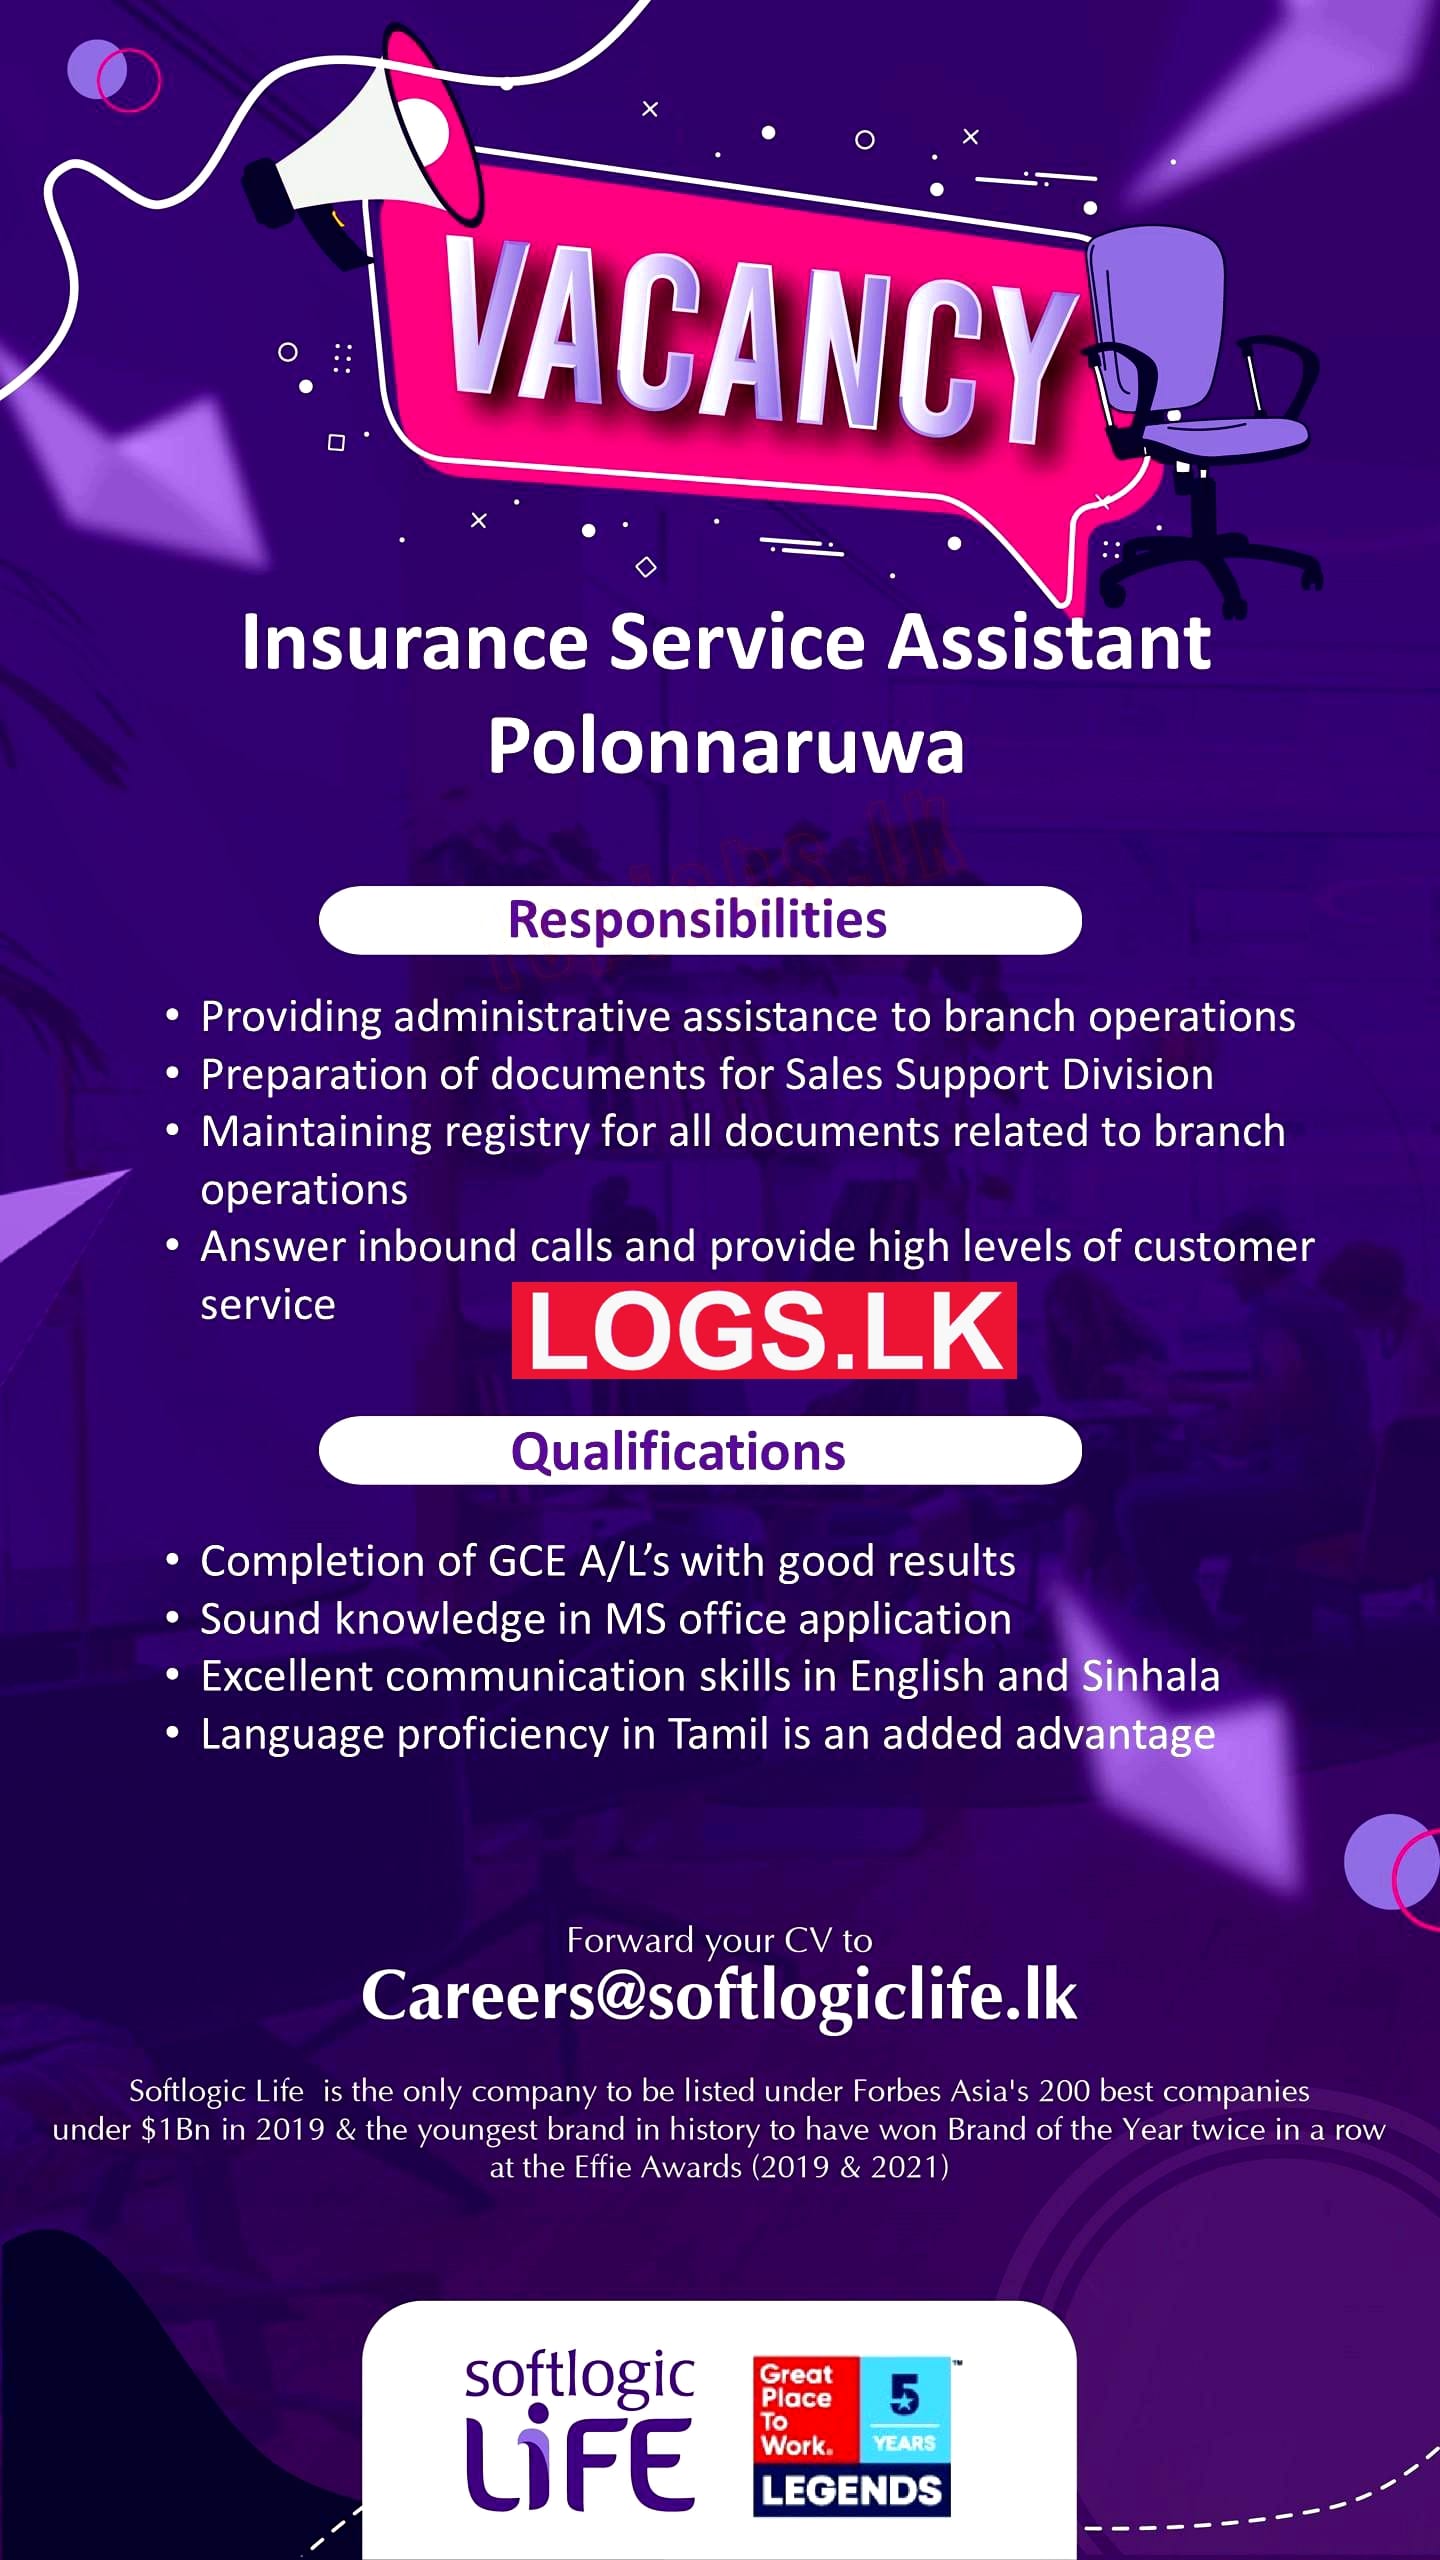 Insurance Service Assistant Vacancy at Polonnaruwa Softlogic Life Insurance Job Vacancies